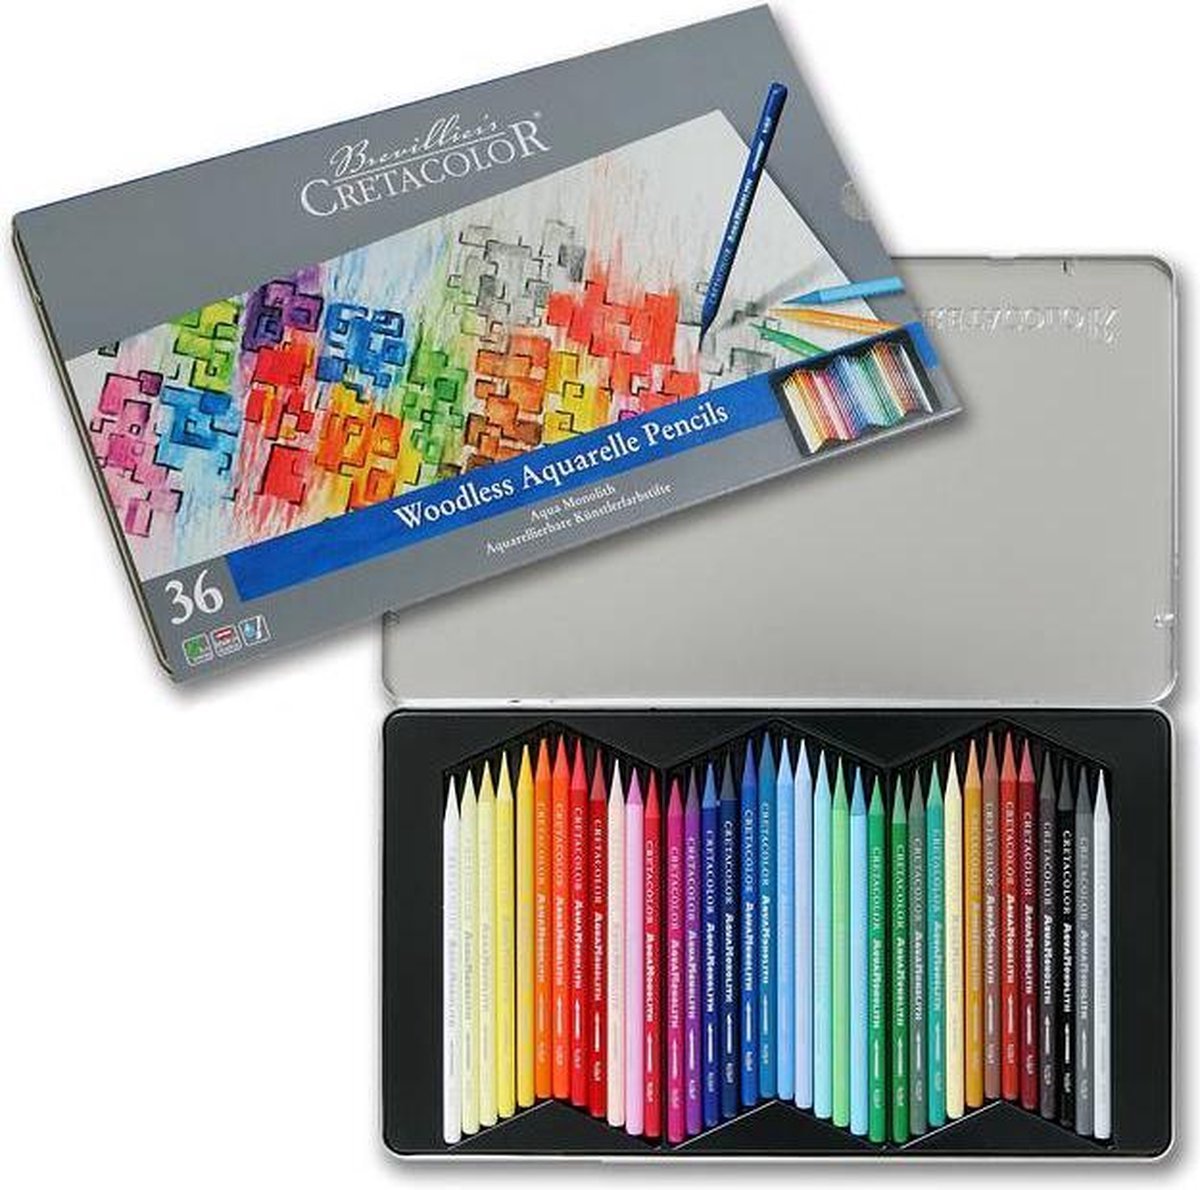 Creatacolor - Woodless Aquarelle Pencils 36 set